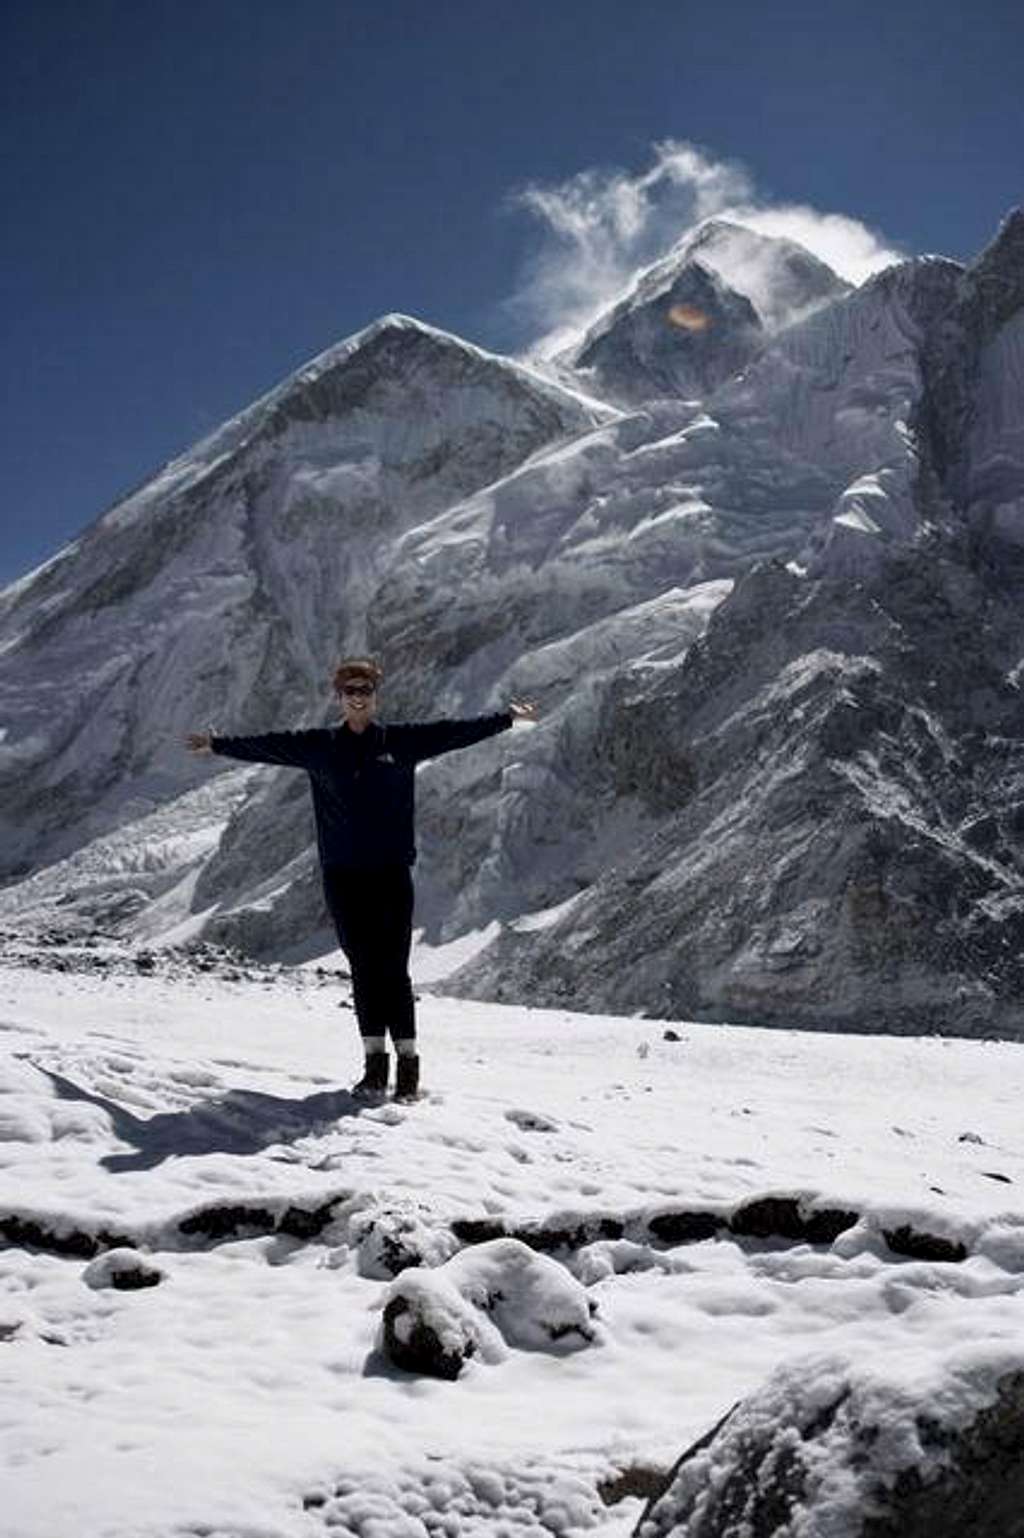 The peak of Everest taken...